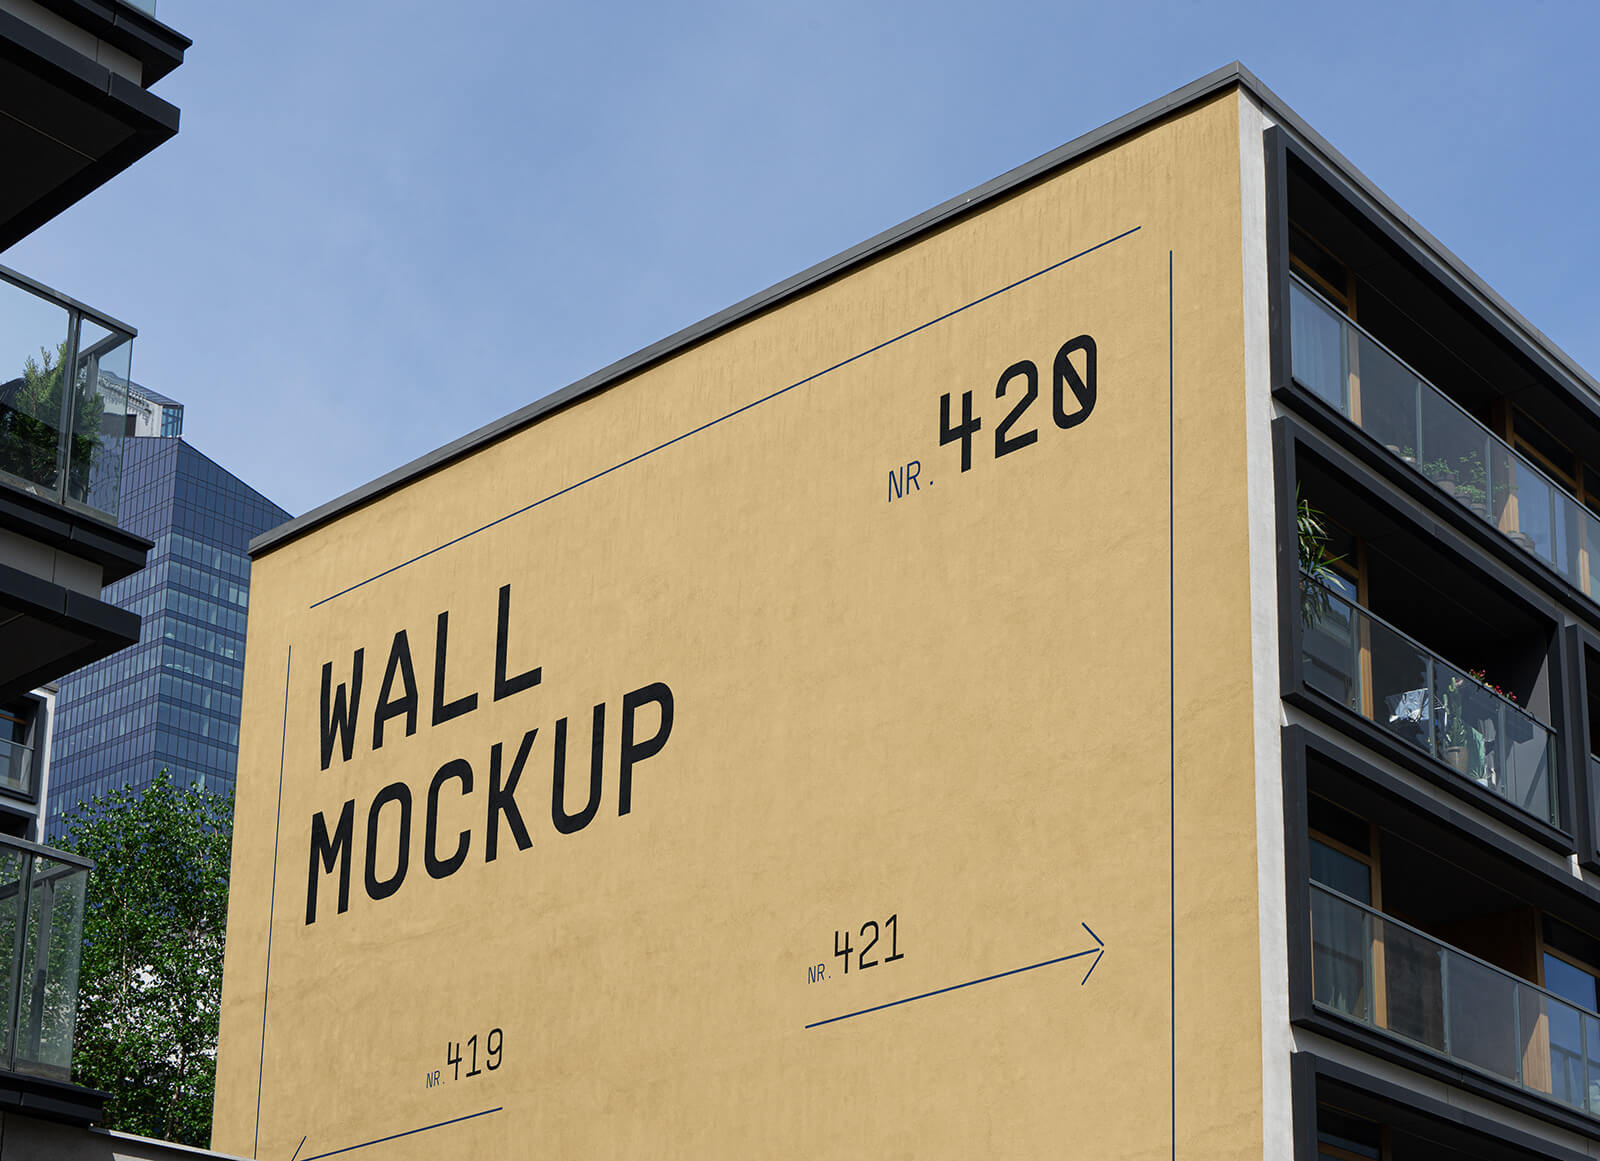 Building Side Elevation Wallscape Mockup